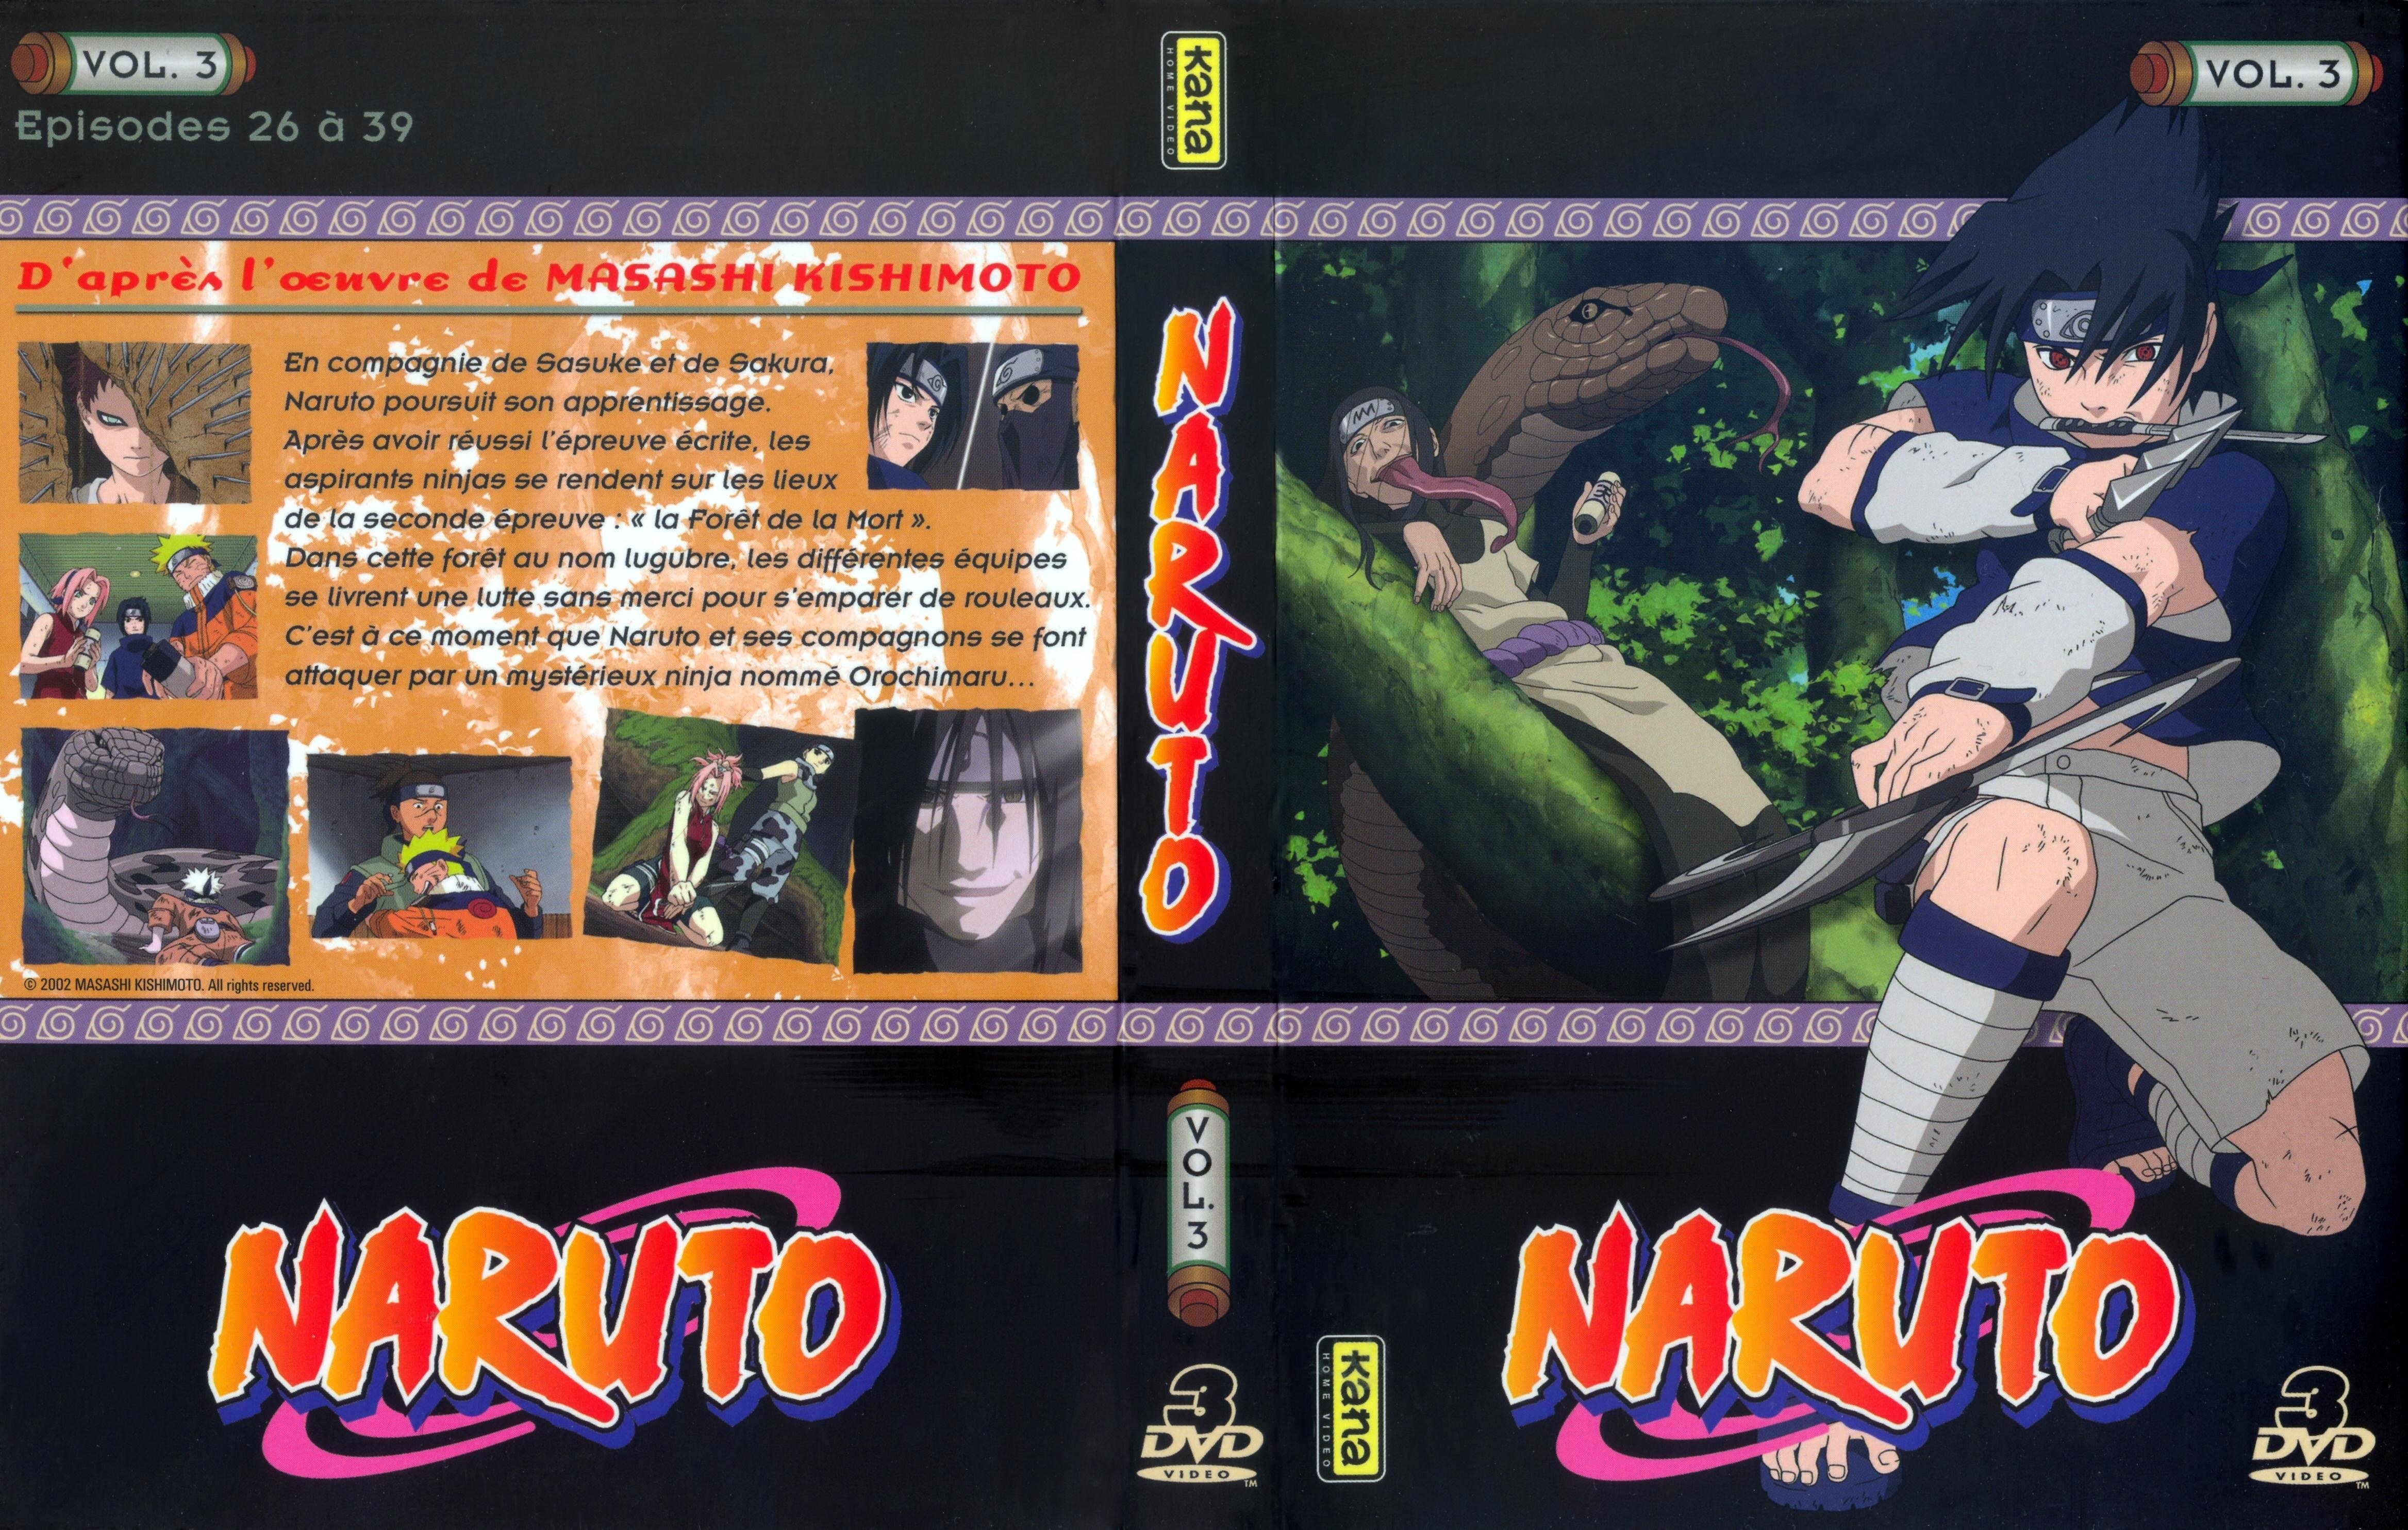 Jaquette DVD Naruto vol 03